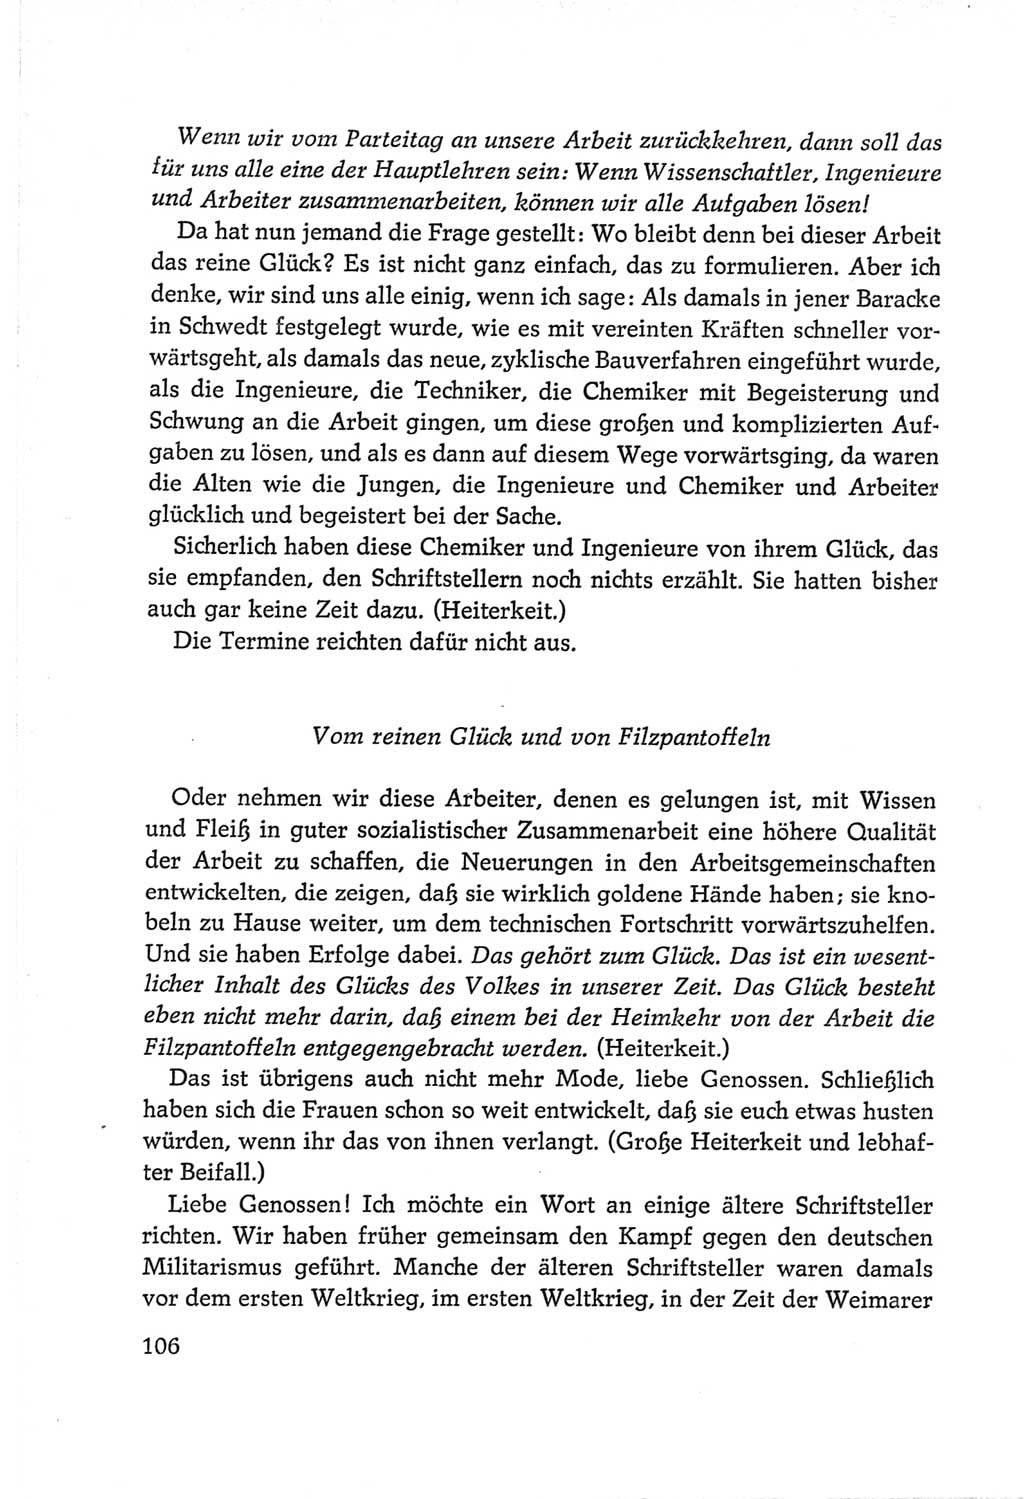 Protokoll der Verhandlungen des Ⅵ. Parteitages der Sozialistischen Einheitspartei Deutschlands (SED) [Deutsche Demokratische Republik (DDR)] 1963, Band Ⅱ, Seite 106 (Prot. Verh. Ⅵ. PT SED DDR 1963, Bd. Ⅱ, S. 106)